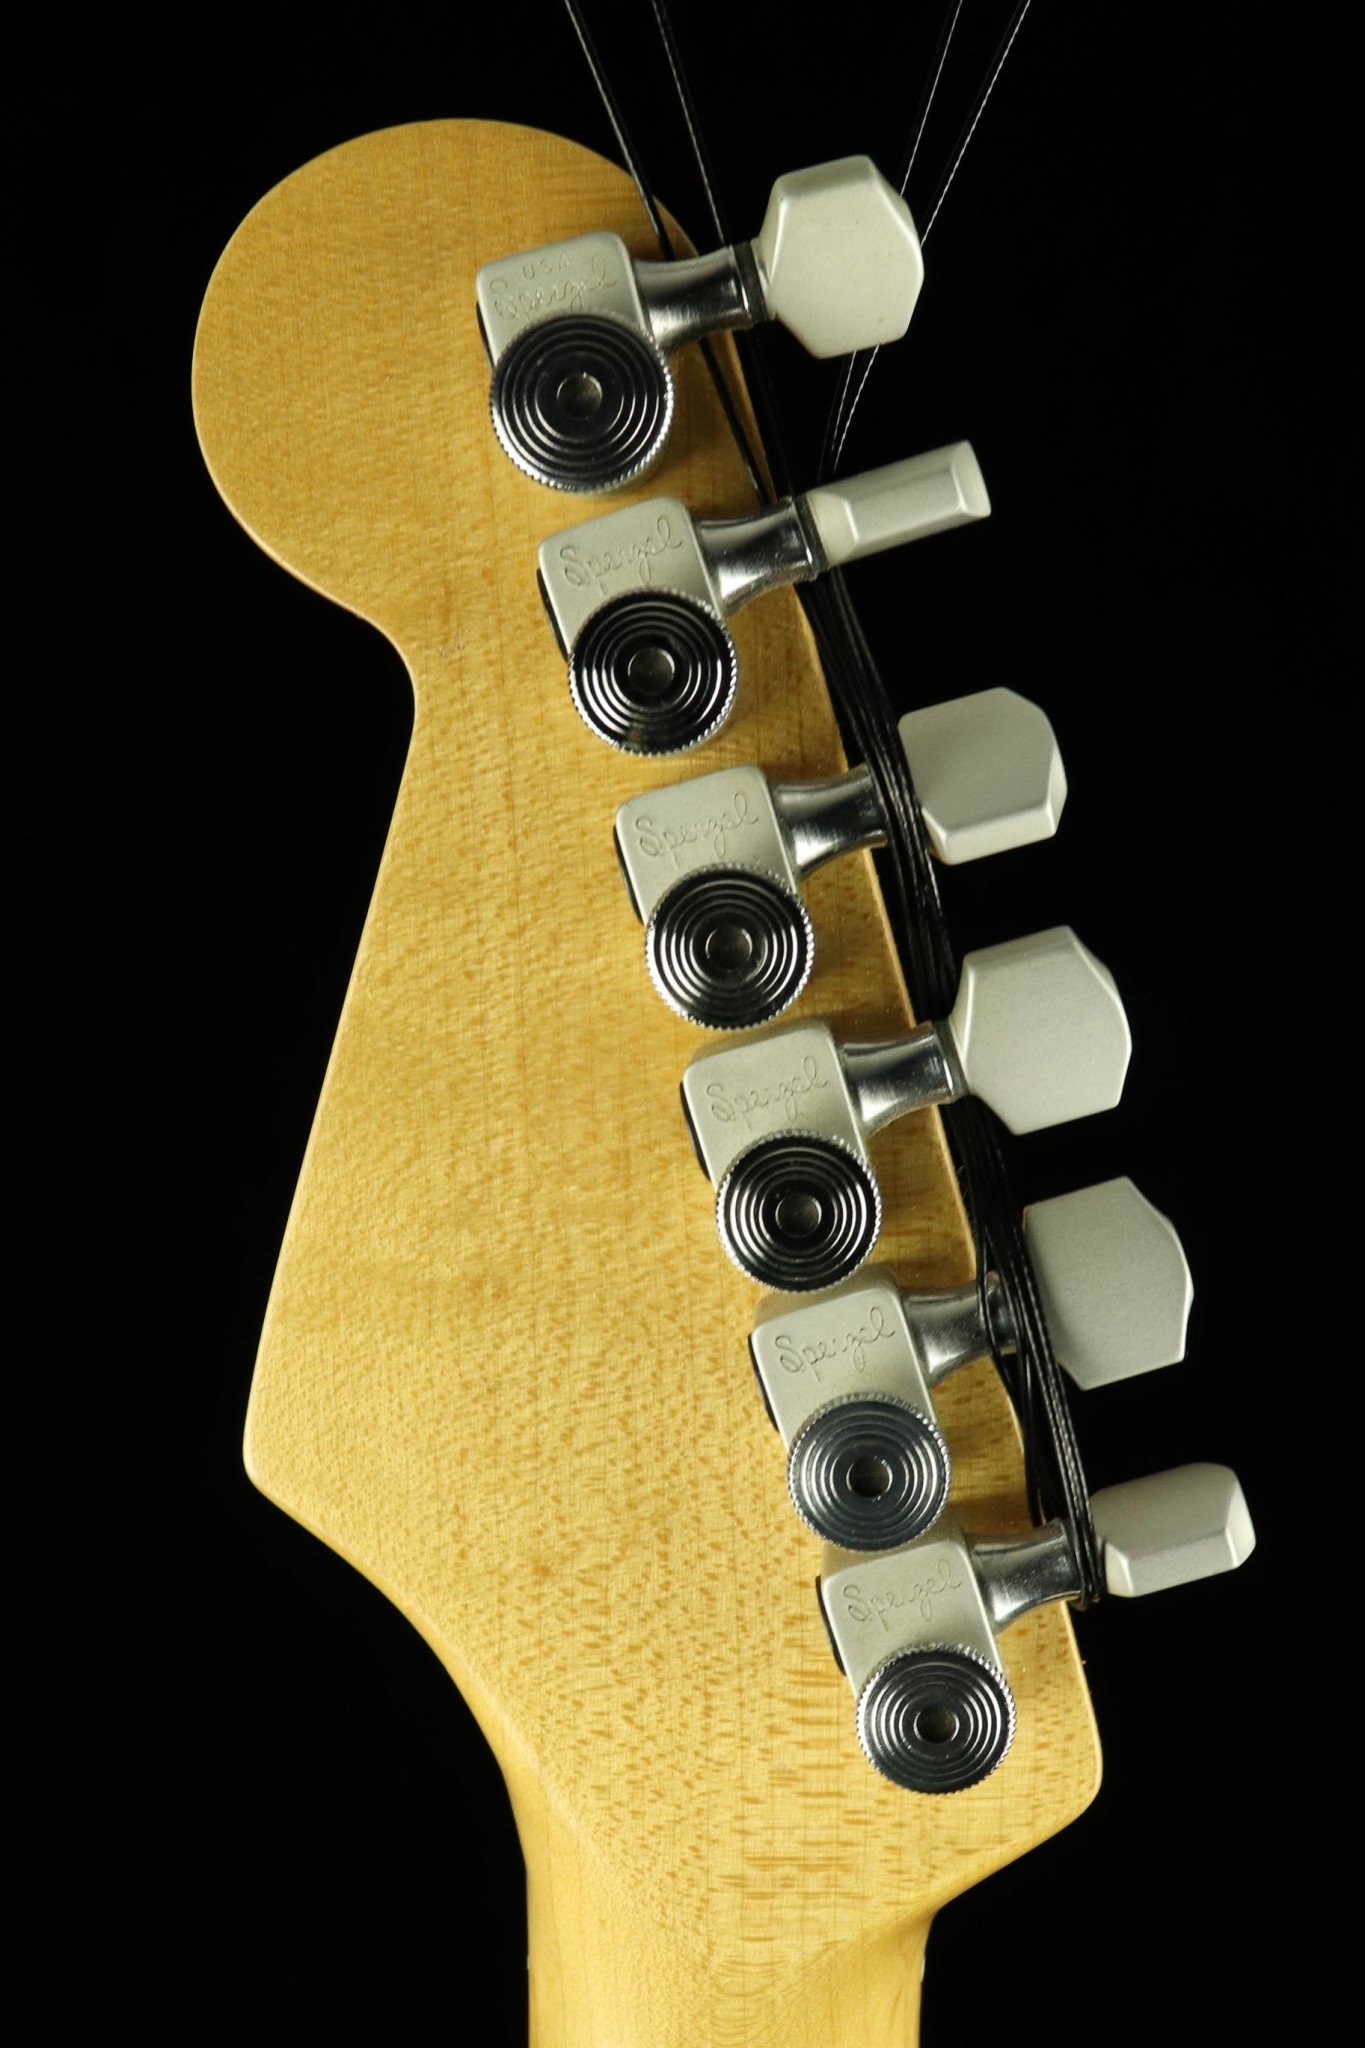 Fender Fender Stratocaster - Olympic White